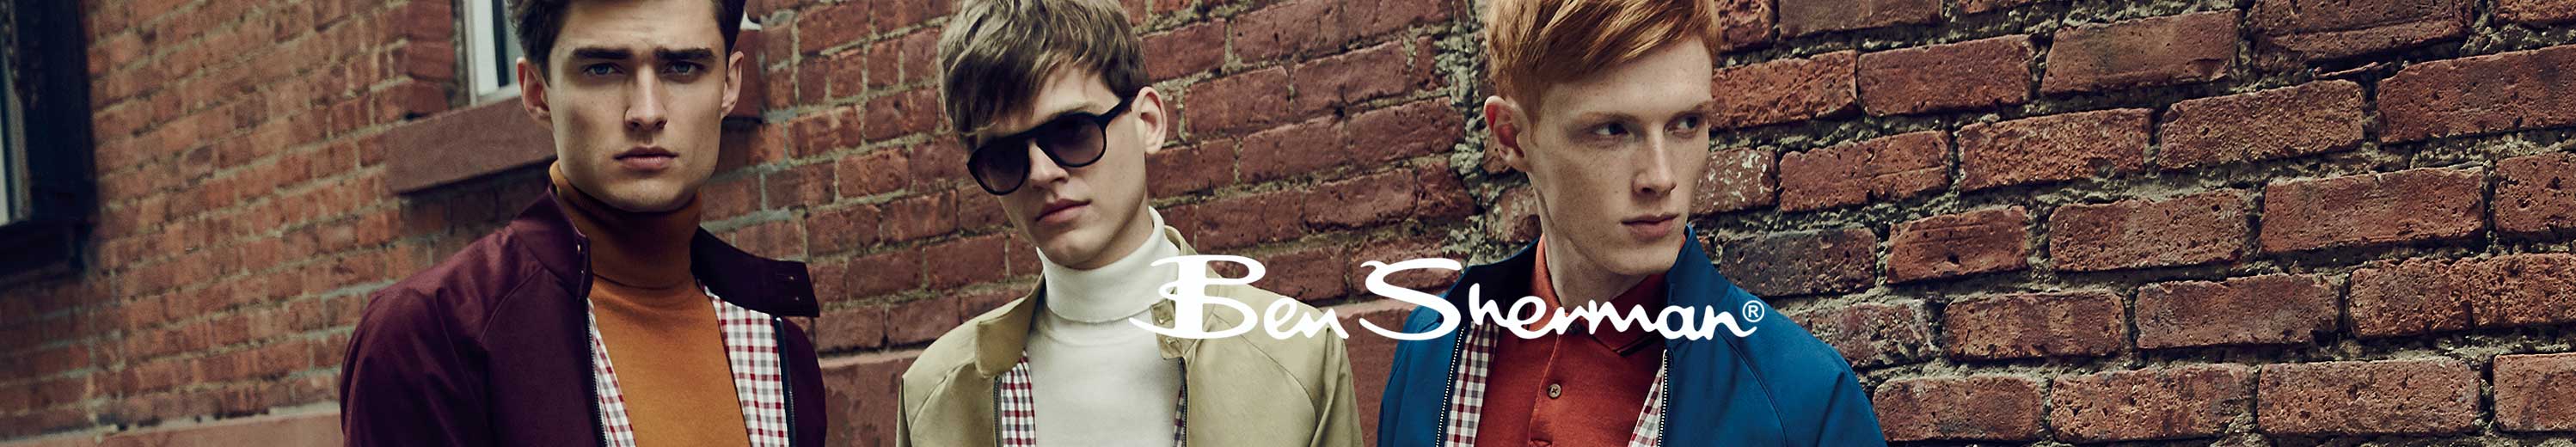 Ben Sherman Glasses and Eyewear